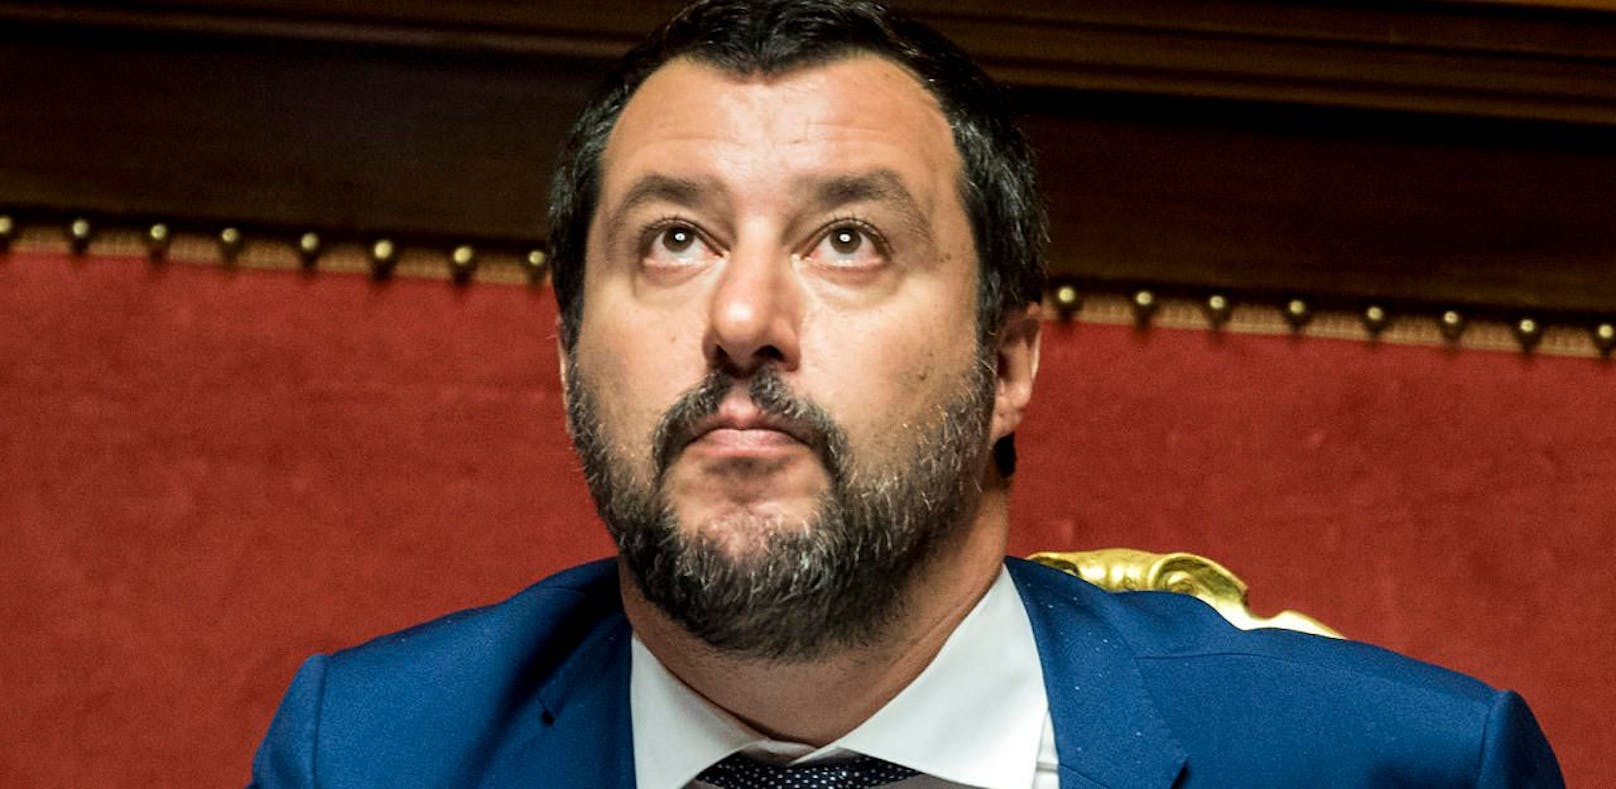 Matteo Salvini, Innenminister und Chef der Lega Nord, bei einer Sitzung des Senats in Rom